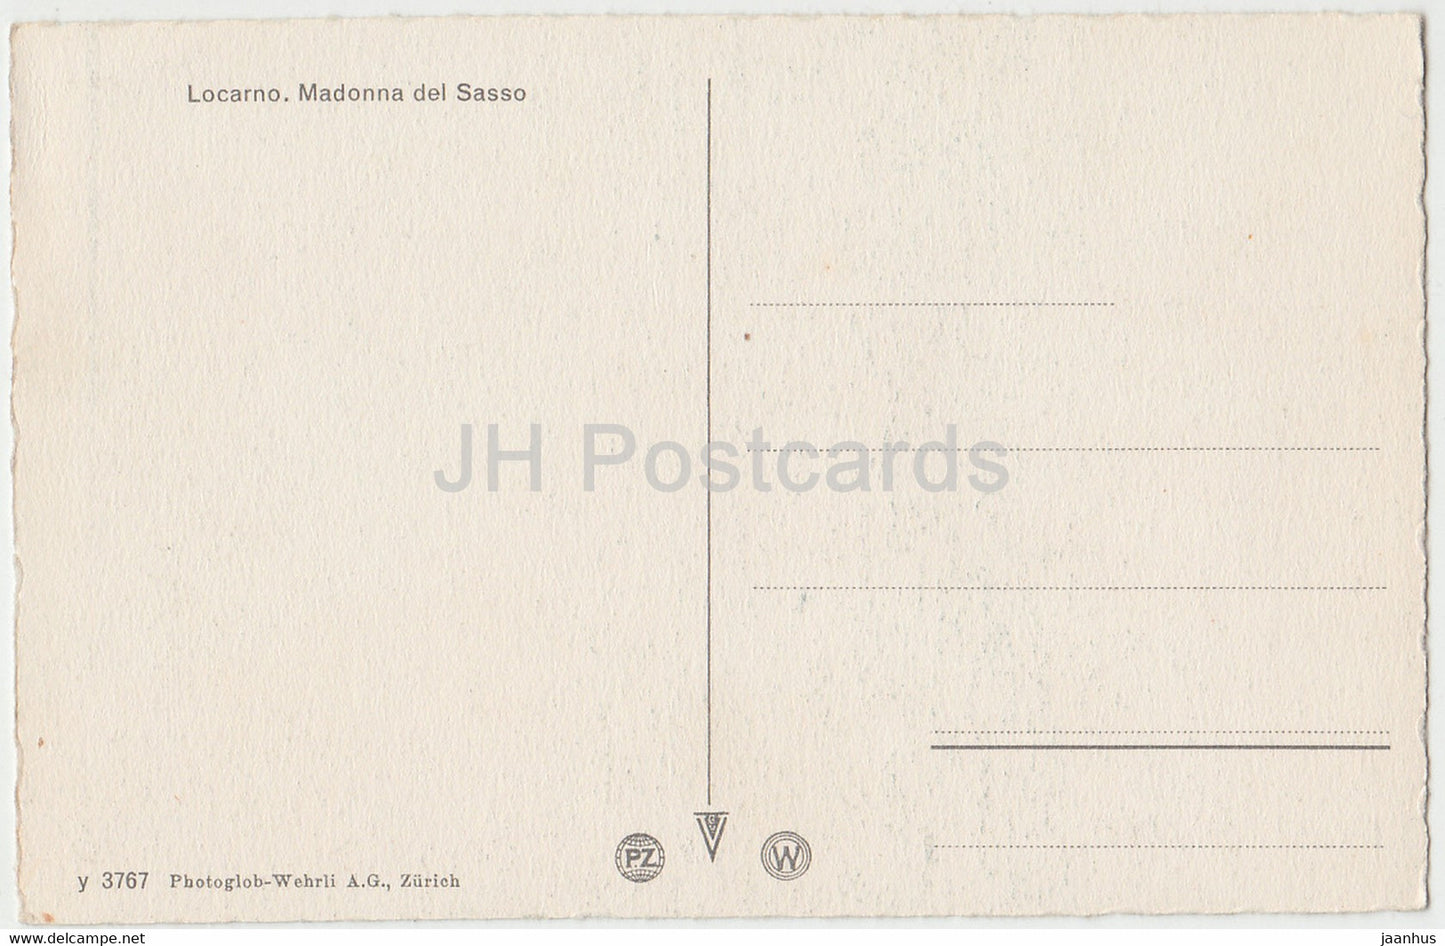 Locarno - Madonna del Sasso - 3767 - old postcard - Switzerland - unused